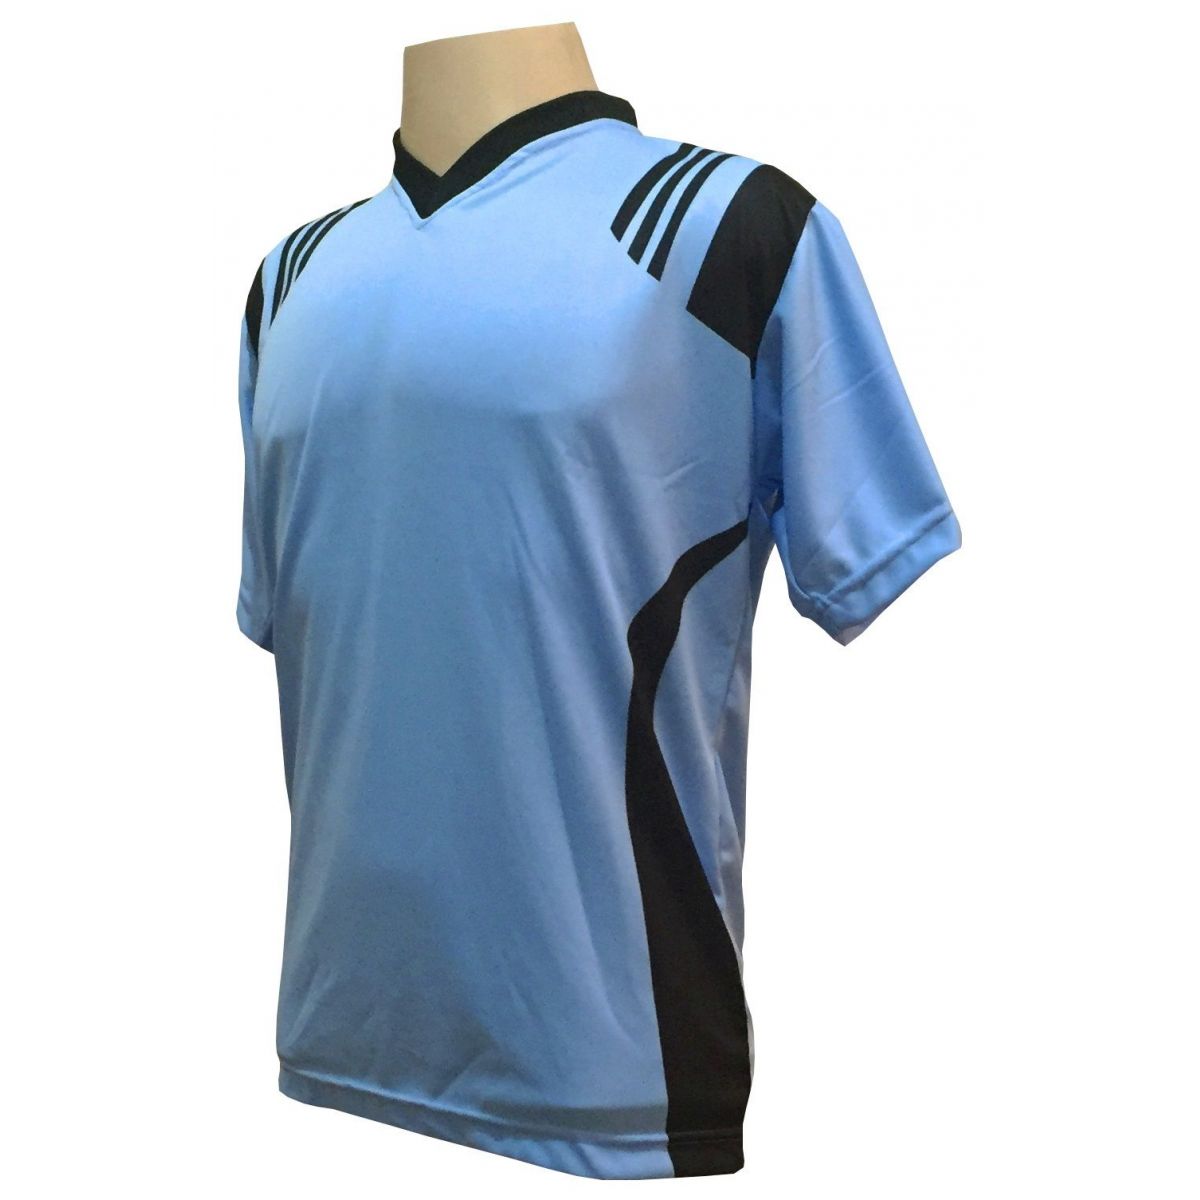 Uniforme Esportivo com 12 camisas modelo Roma Celeste/Preto + 12 calções modelo Madrid + 1 Goleiro + Brindes